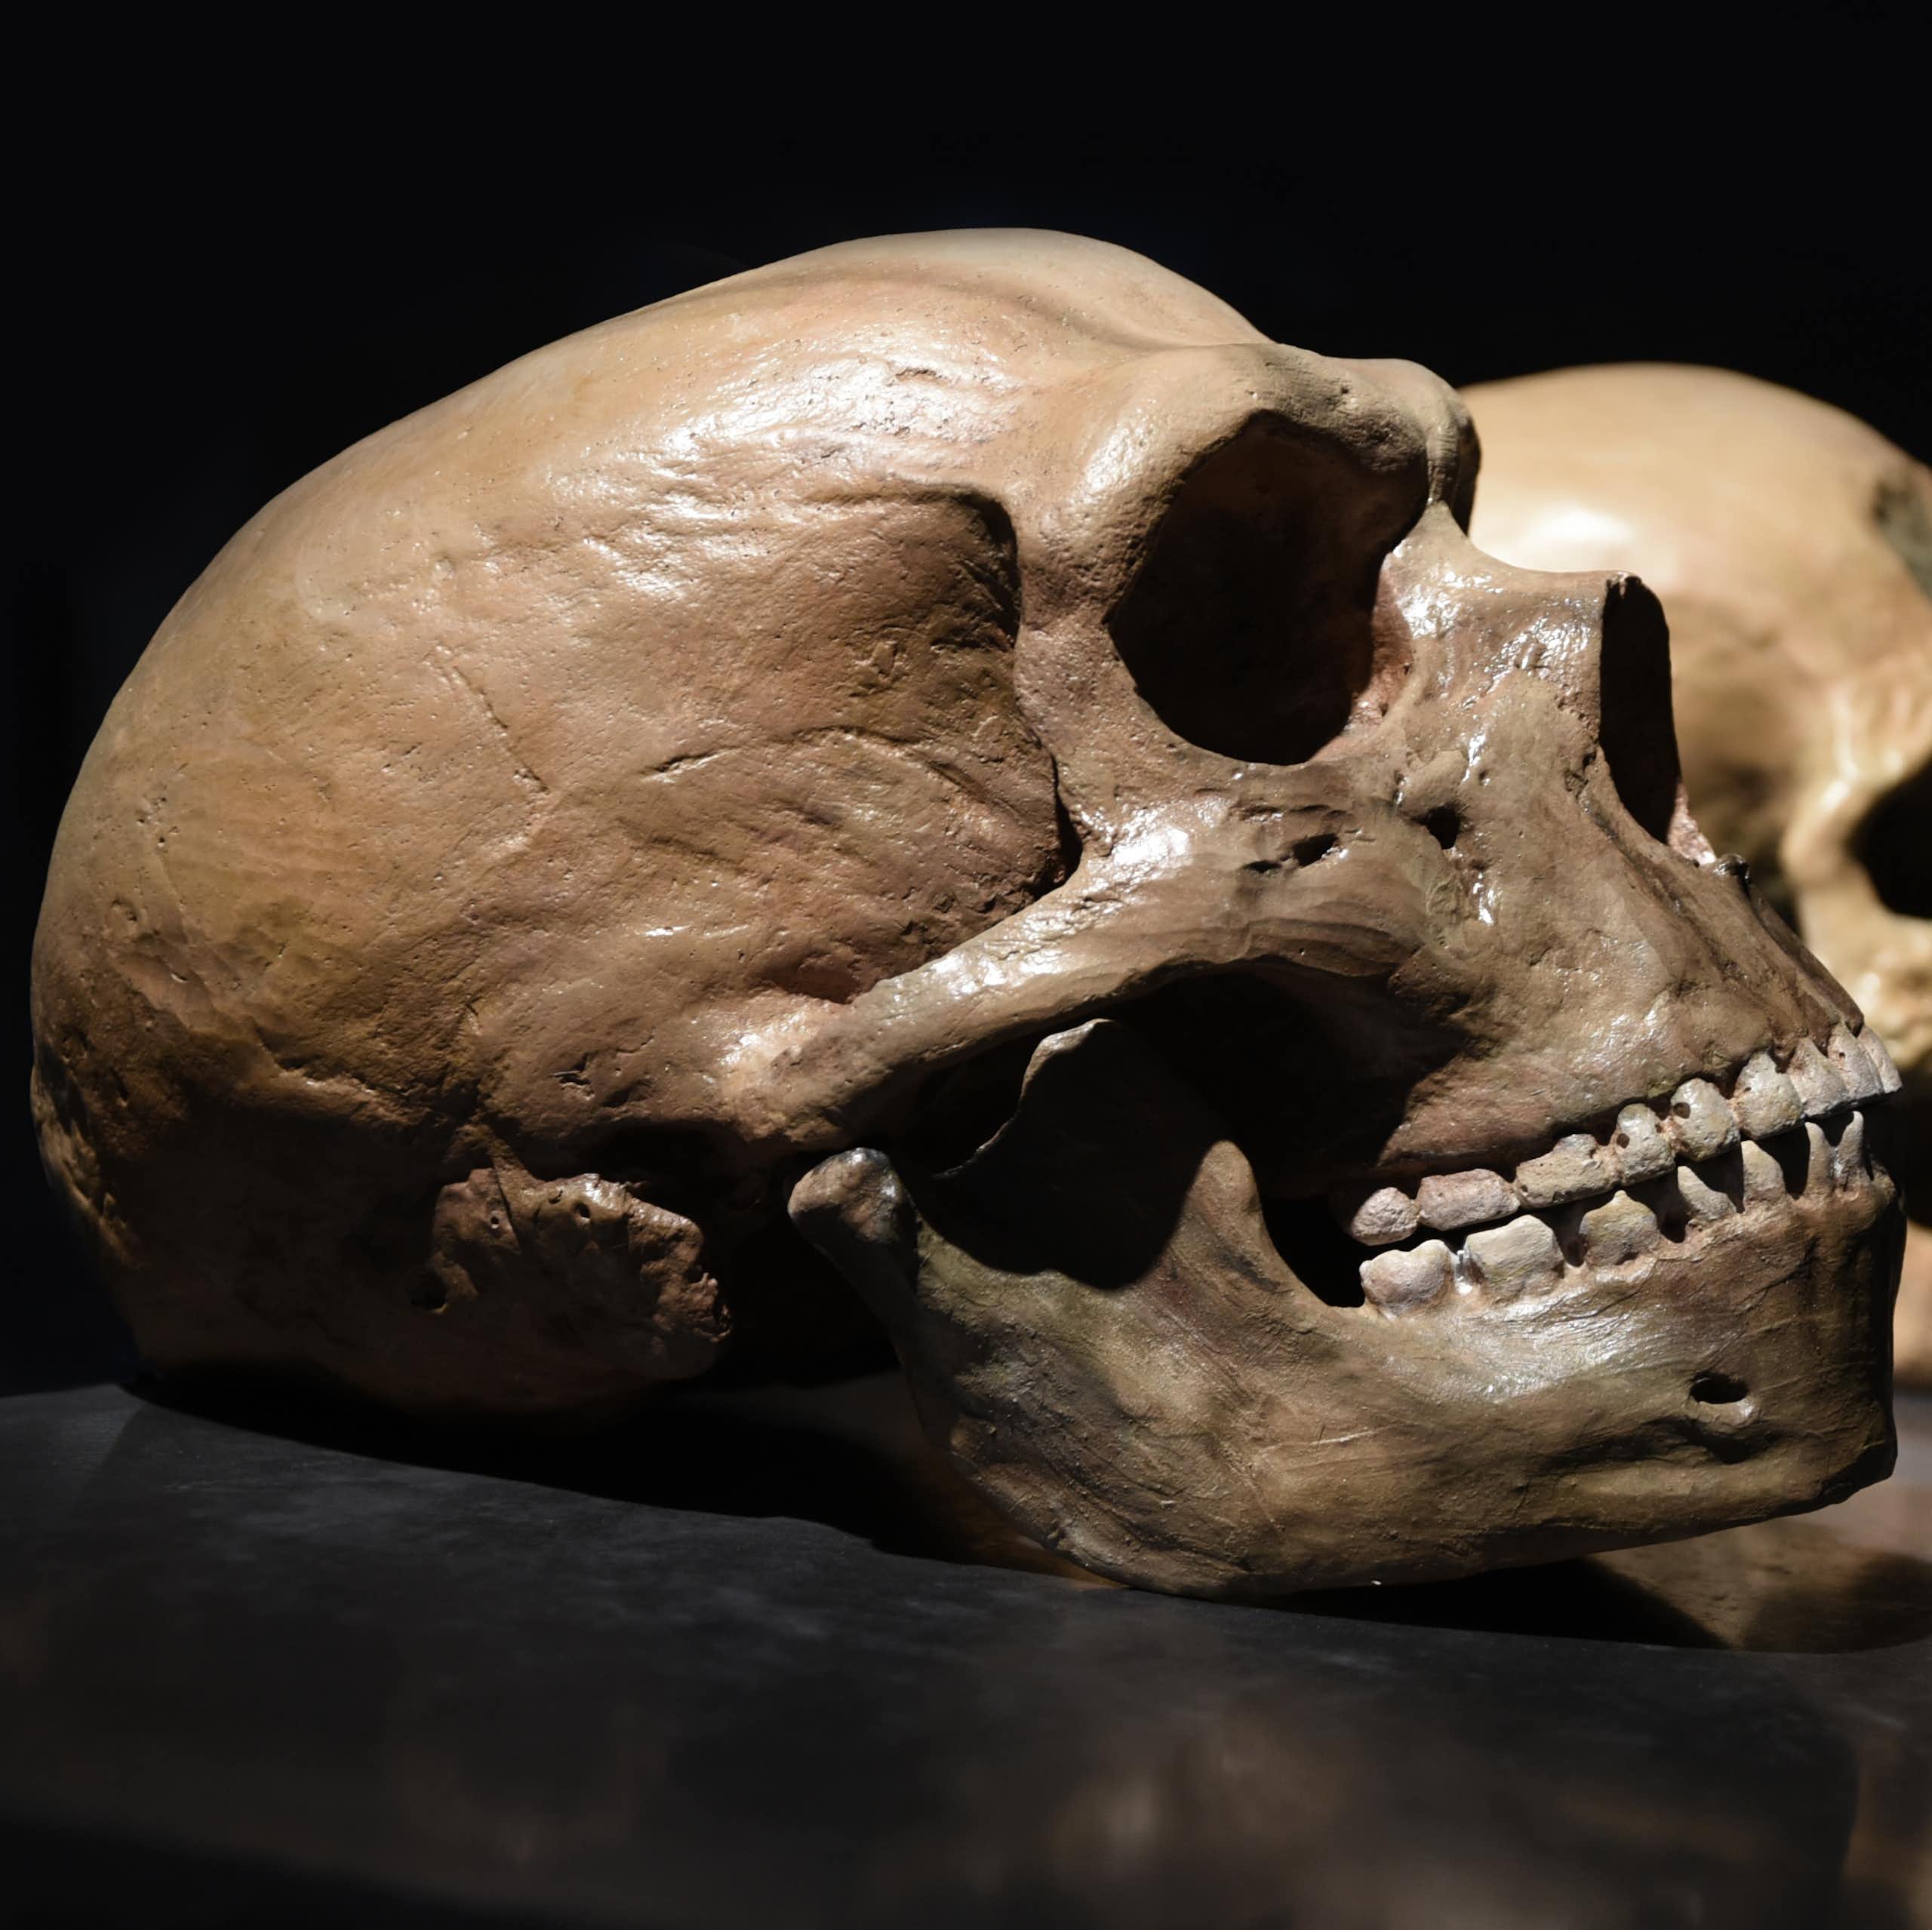 Como a linguagem dos neandertais era diferente da dos humanos modernos - eles provavelmente não usavam metáforas